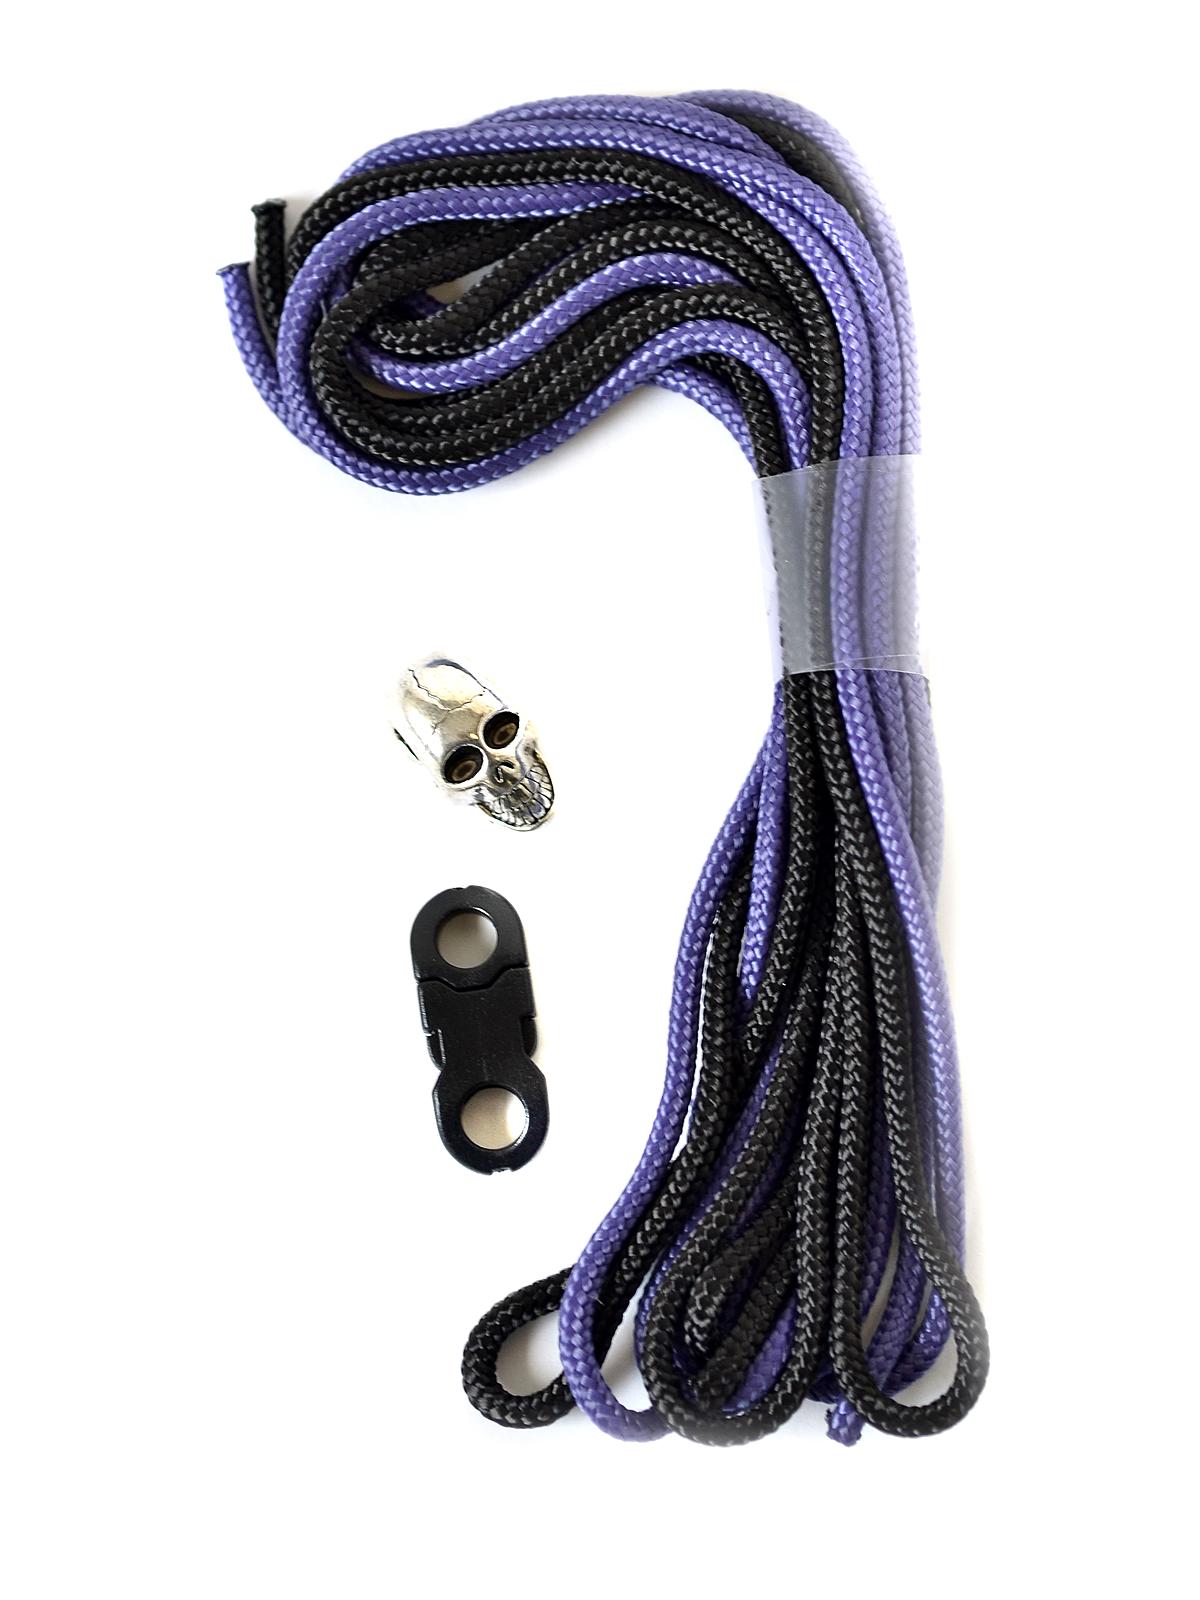 Parachute Cord Skull Bead Bracelet Kits Purple Black